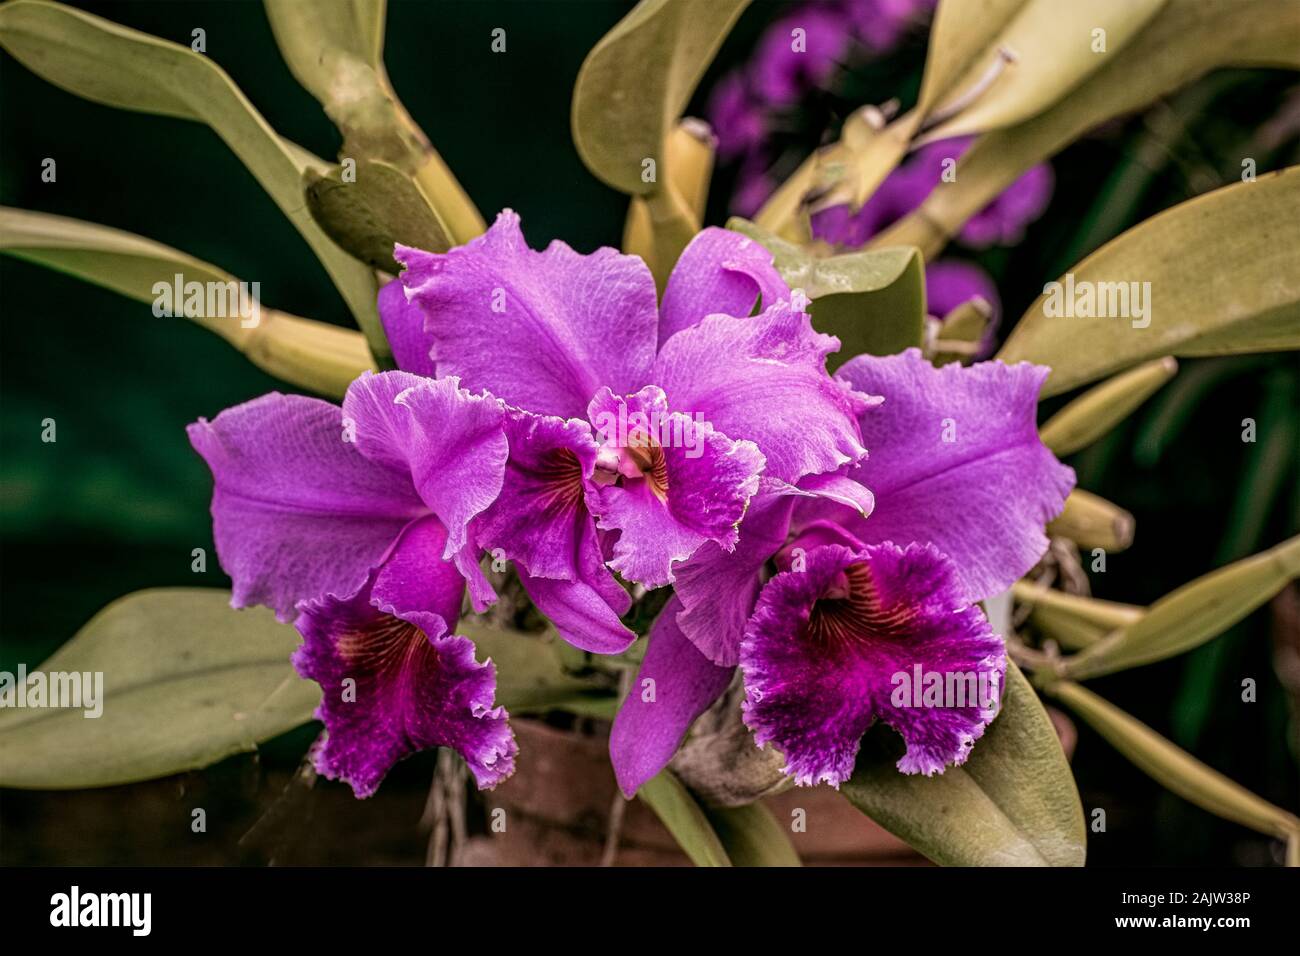 Flower-Orchid-Cataleya-La tuilierie-Awinter.jardín,cultivadas,flor,Kolkata ,exposición,India. Foto de stock